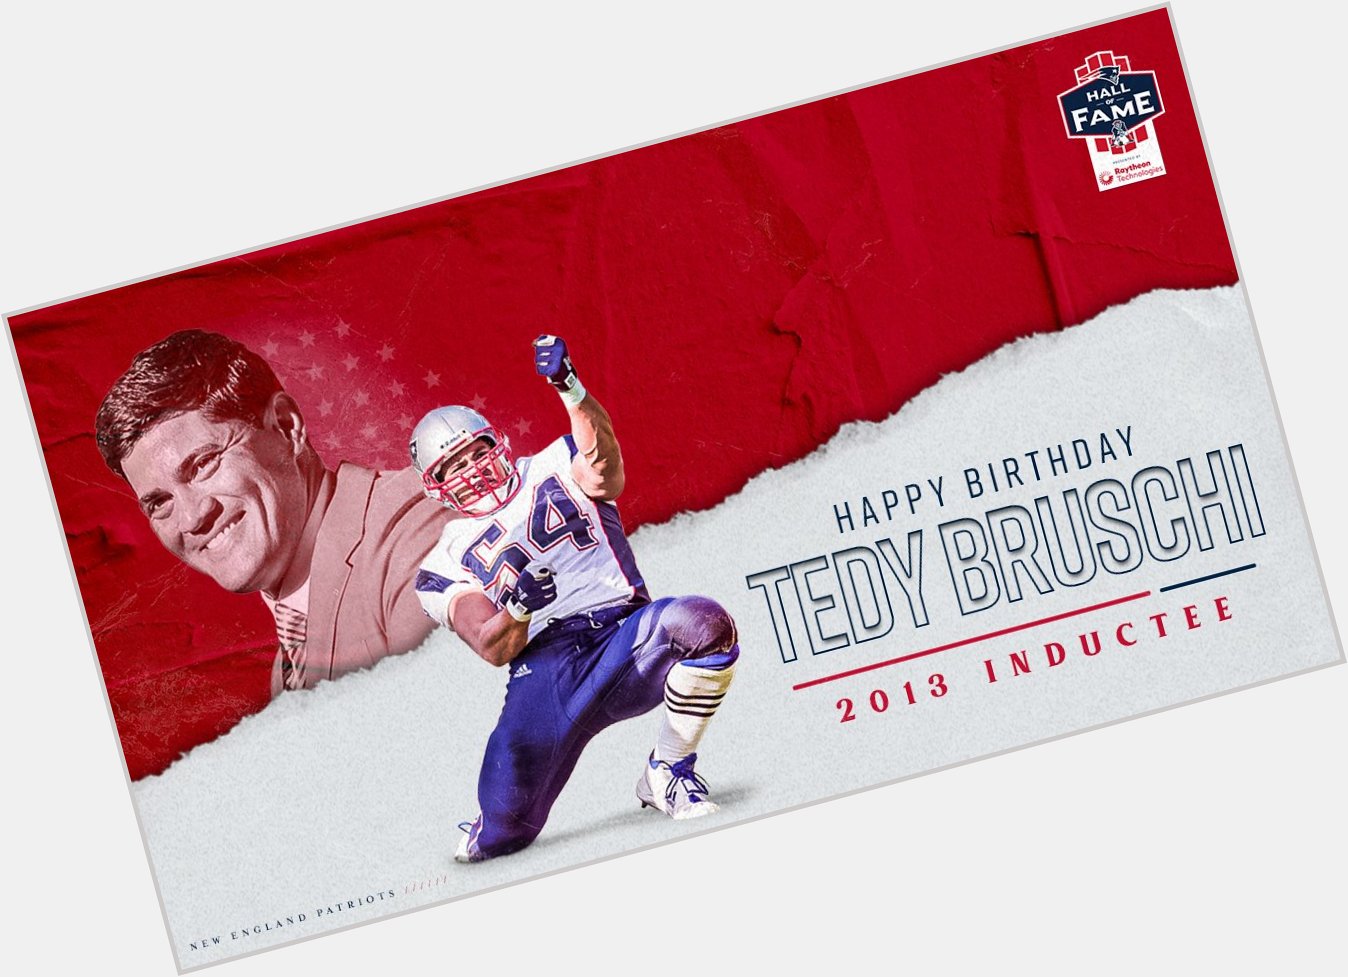 Happy Birthday Tedy Bruschi!  